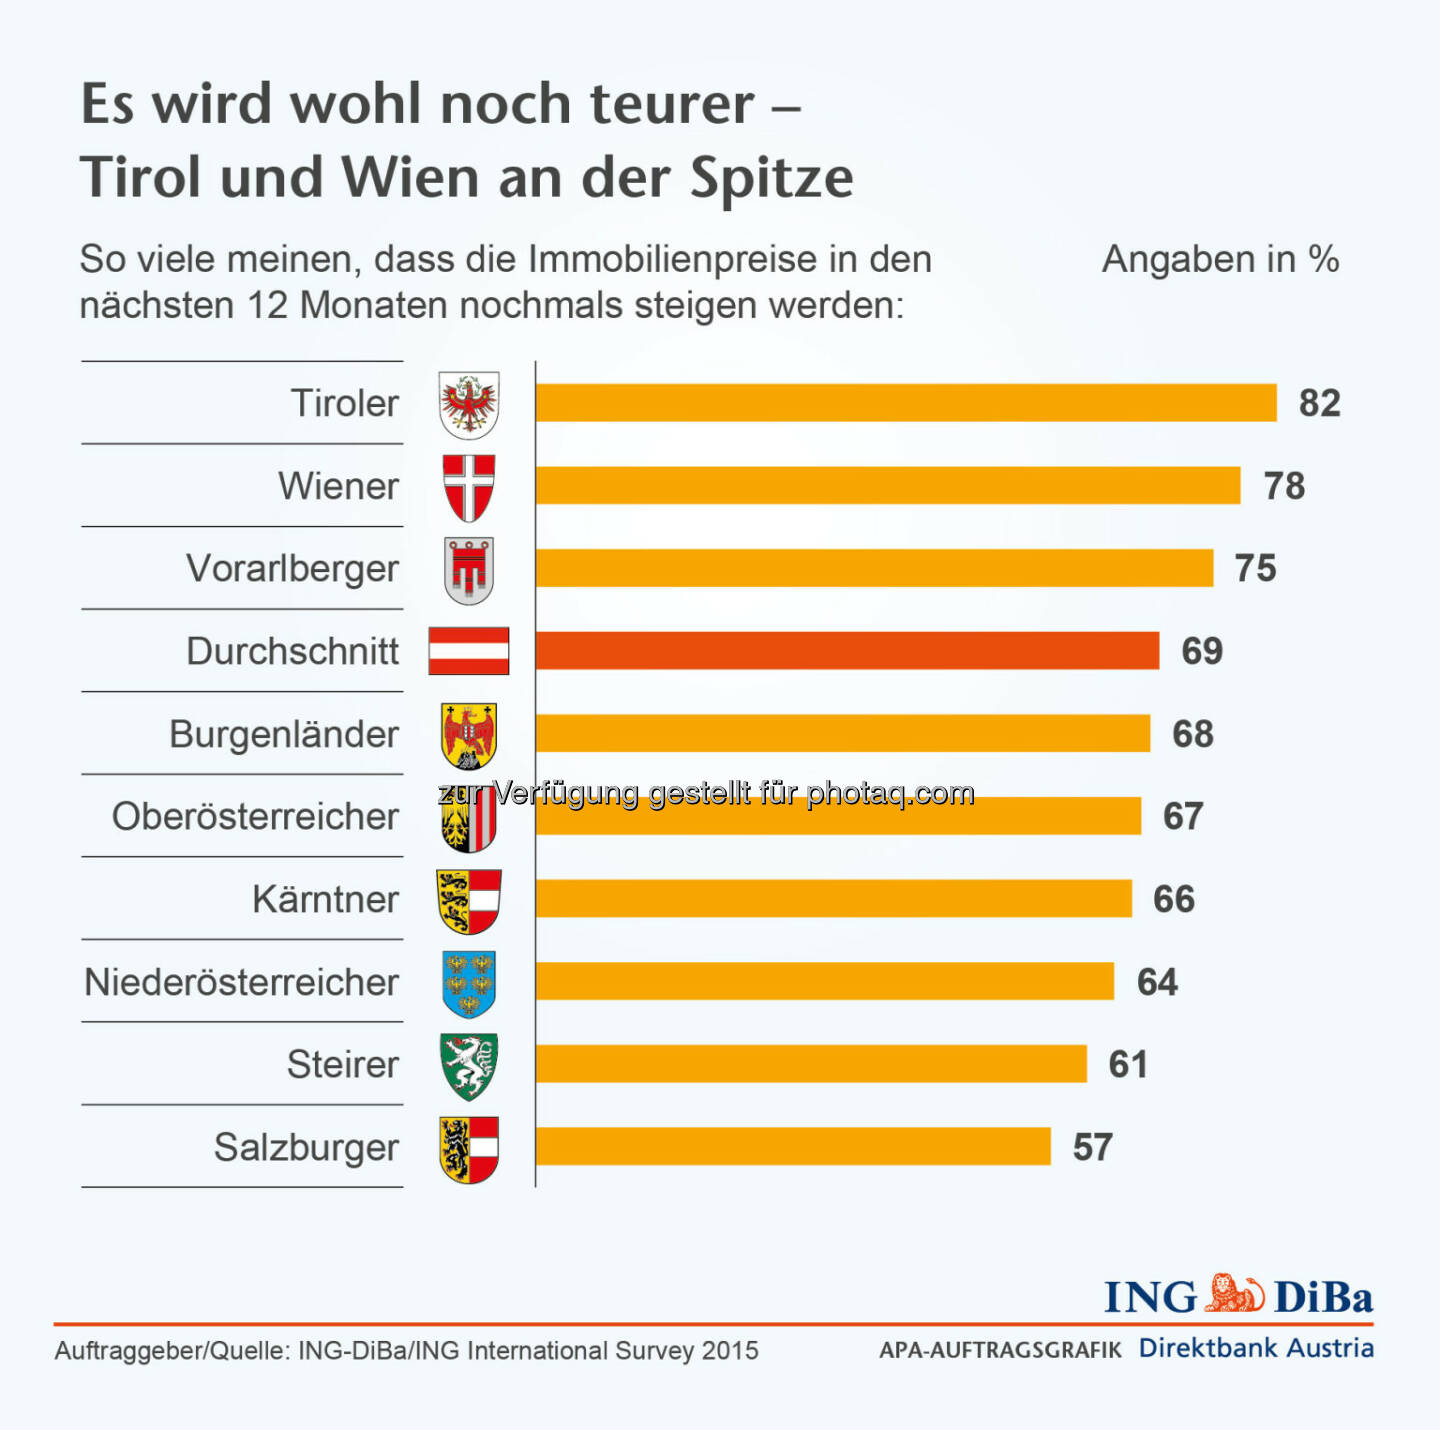 Immobilienpreise steigen : In Österreich sehen sich die Tiroler von dieser Entwicklung besonders stark betroffen, gehen doch ganze 82% von einem weiteren Preisanstieg aus, gefolgt von den Wienern mit 78% und den Vorarlbergern mit 75% :  Umfrage im Auftrag der ING-DiBa : ©ING-DiBa